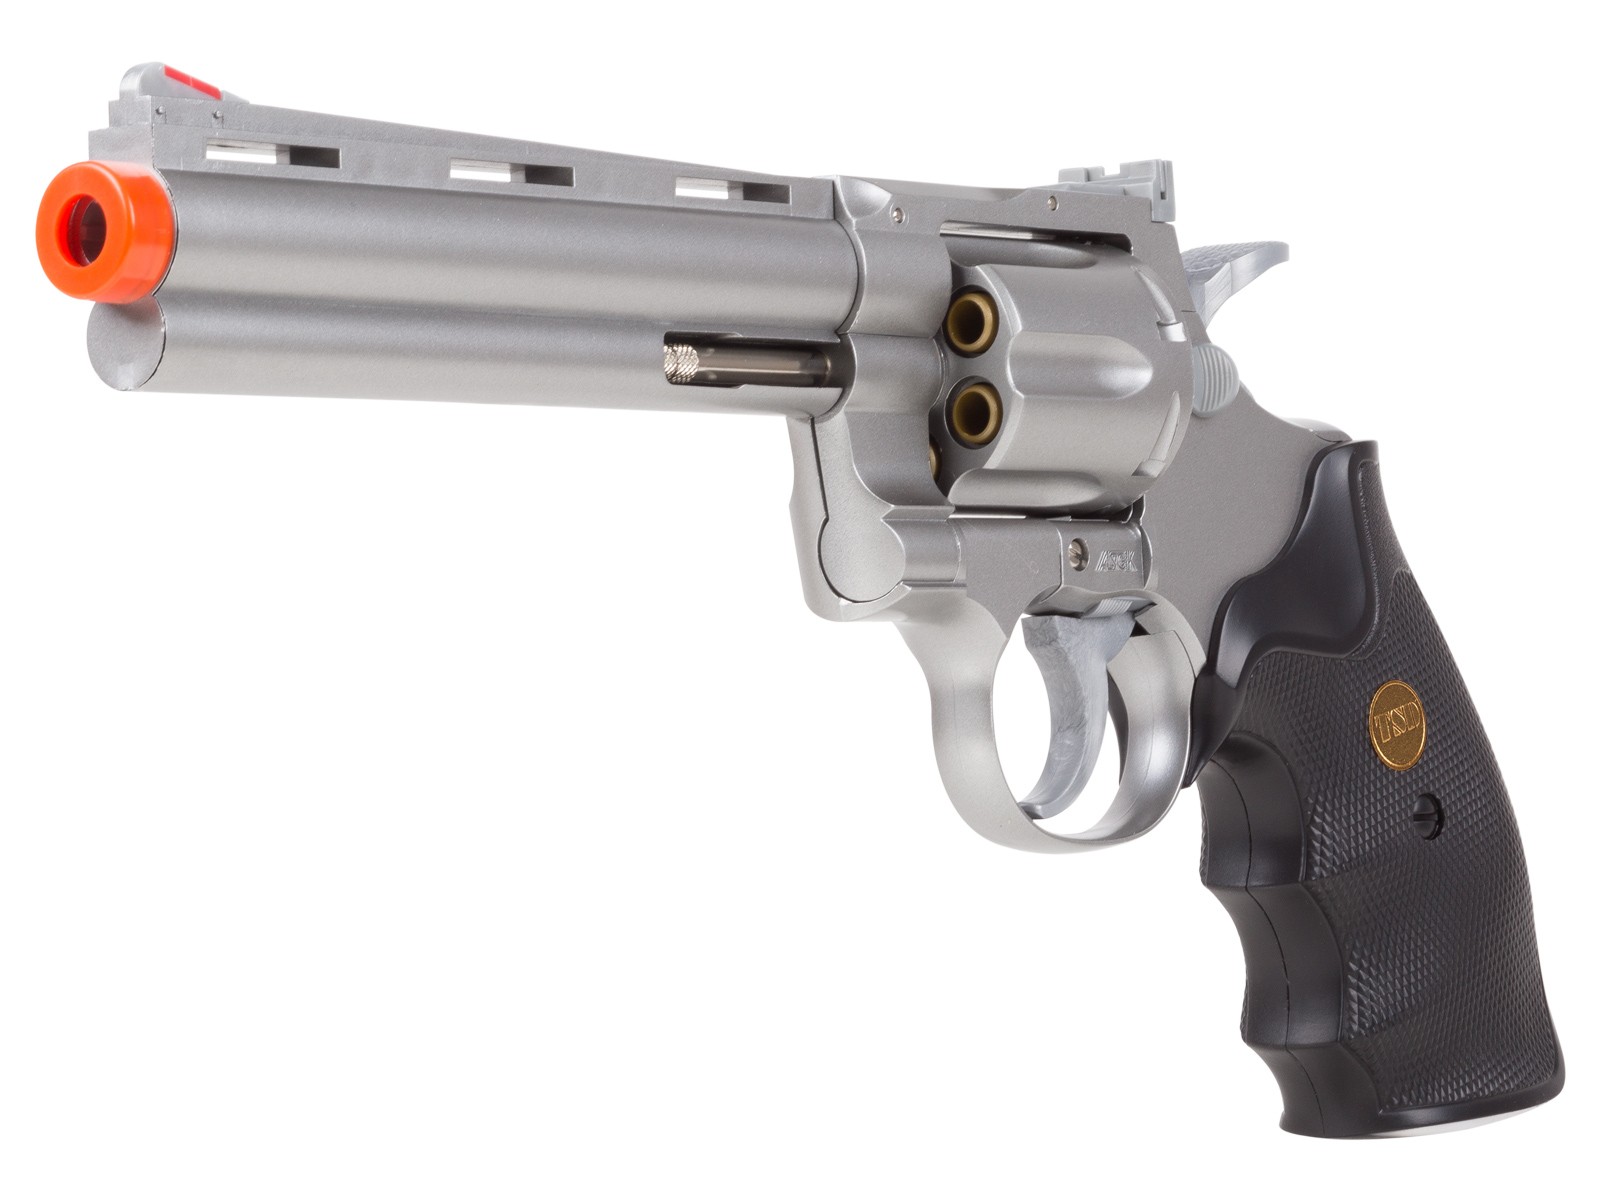 TSD 938 UHC 6 inch revolver, Silver 6mm